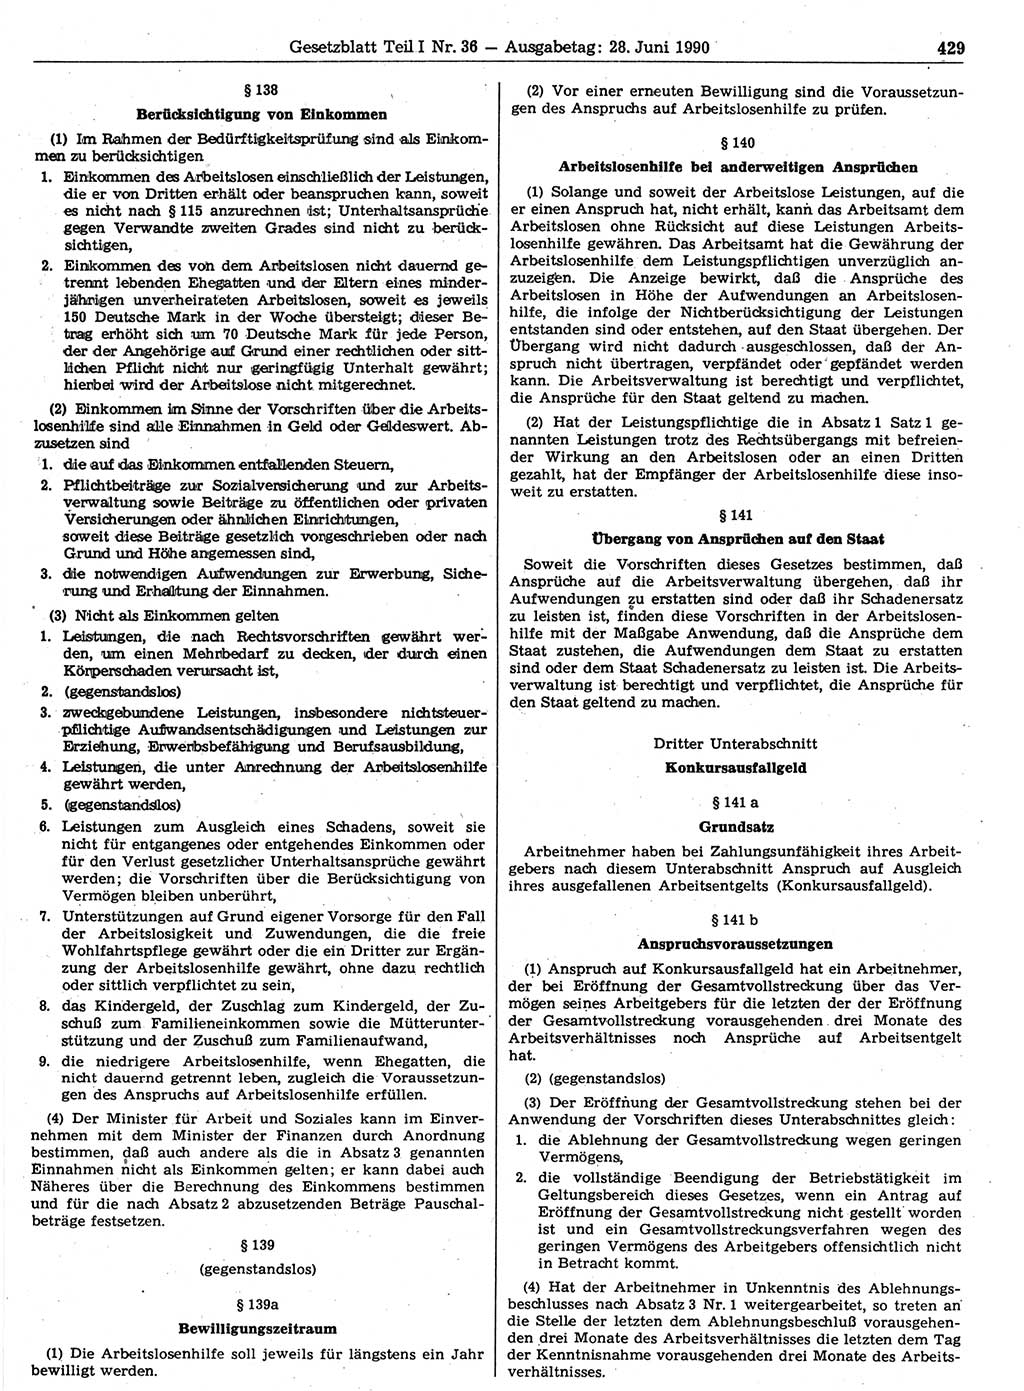 Gesetzblatt (GBl.) der Deutschen Demokratischen Republik (DDR) Teil Ⅰ 1990, Seite 429 (GBl. DDR Ⅰ 1990, S. 429)